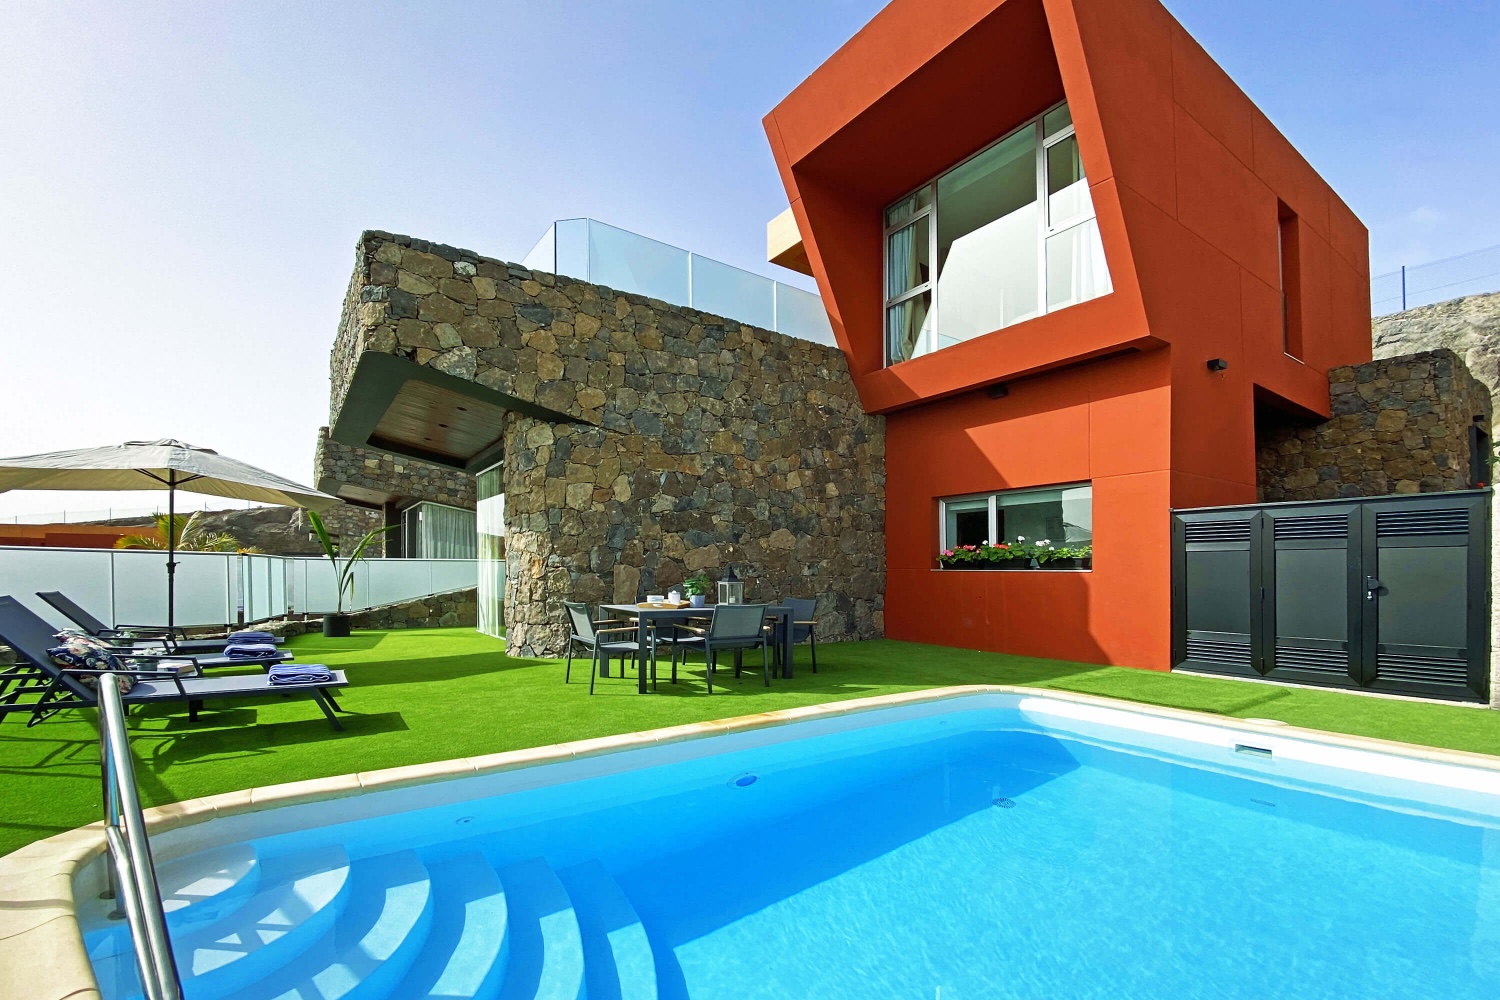 NUEVA APERTURA: Villa moderna y luminosa, totalmente equipada, perfecta para disfrutar del buen tiempo del sur de Gran Canaria en un entorno singular.